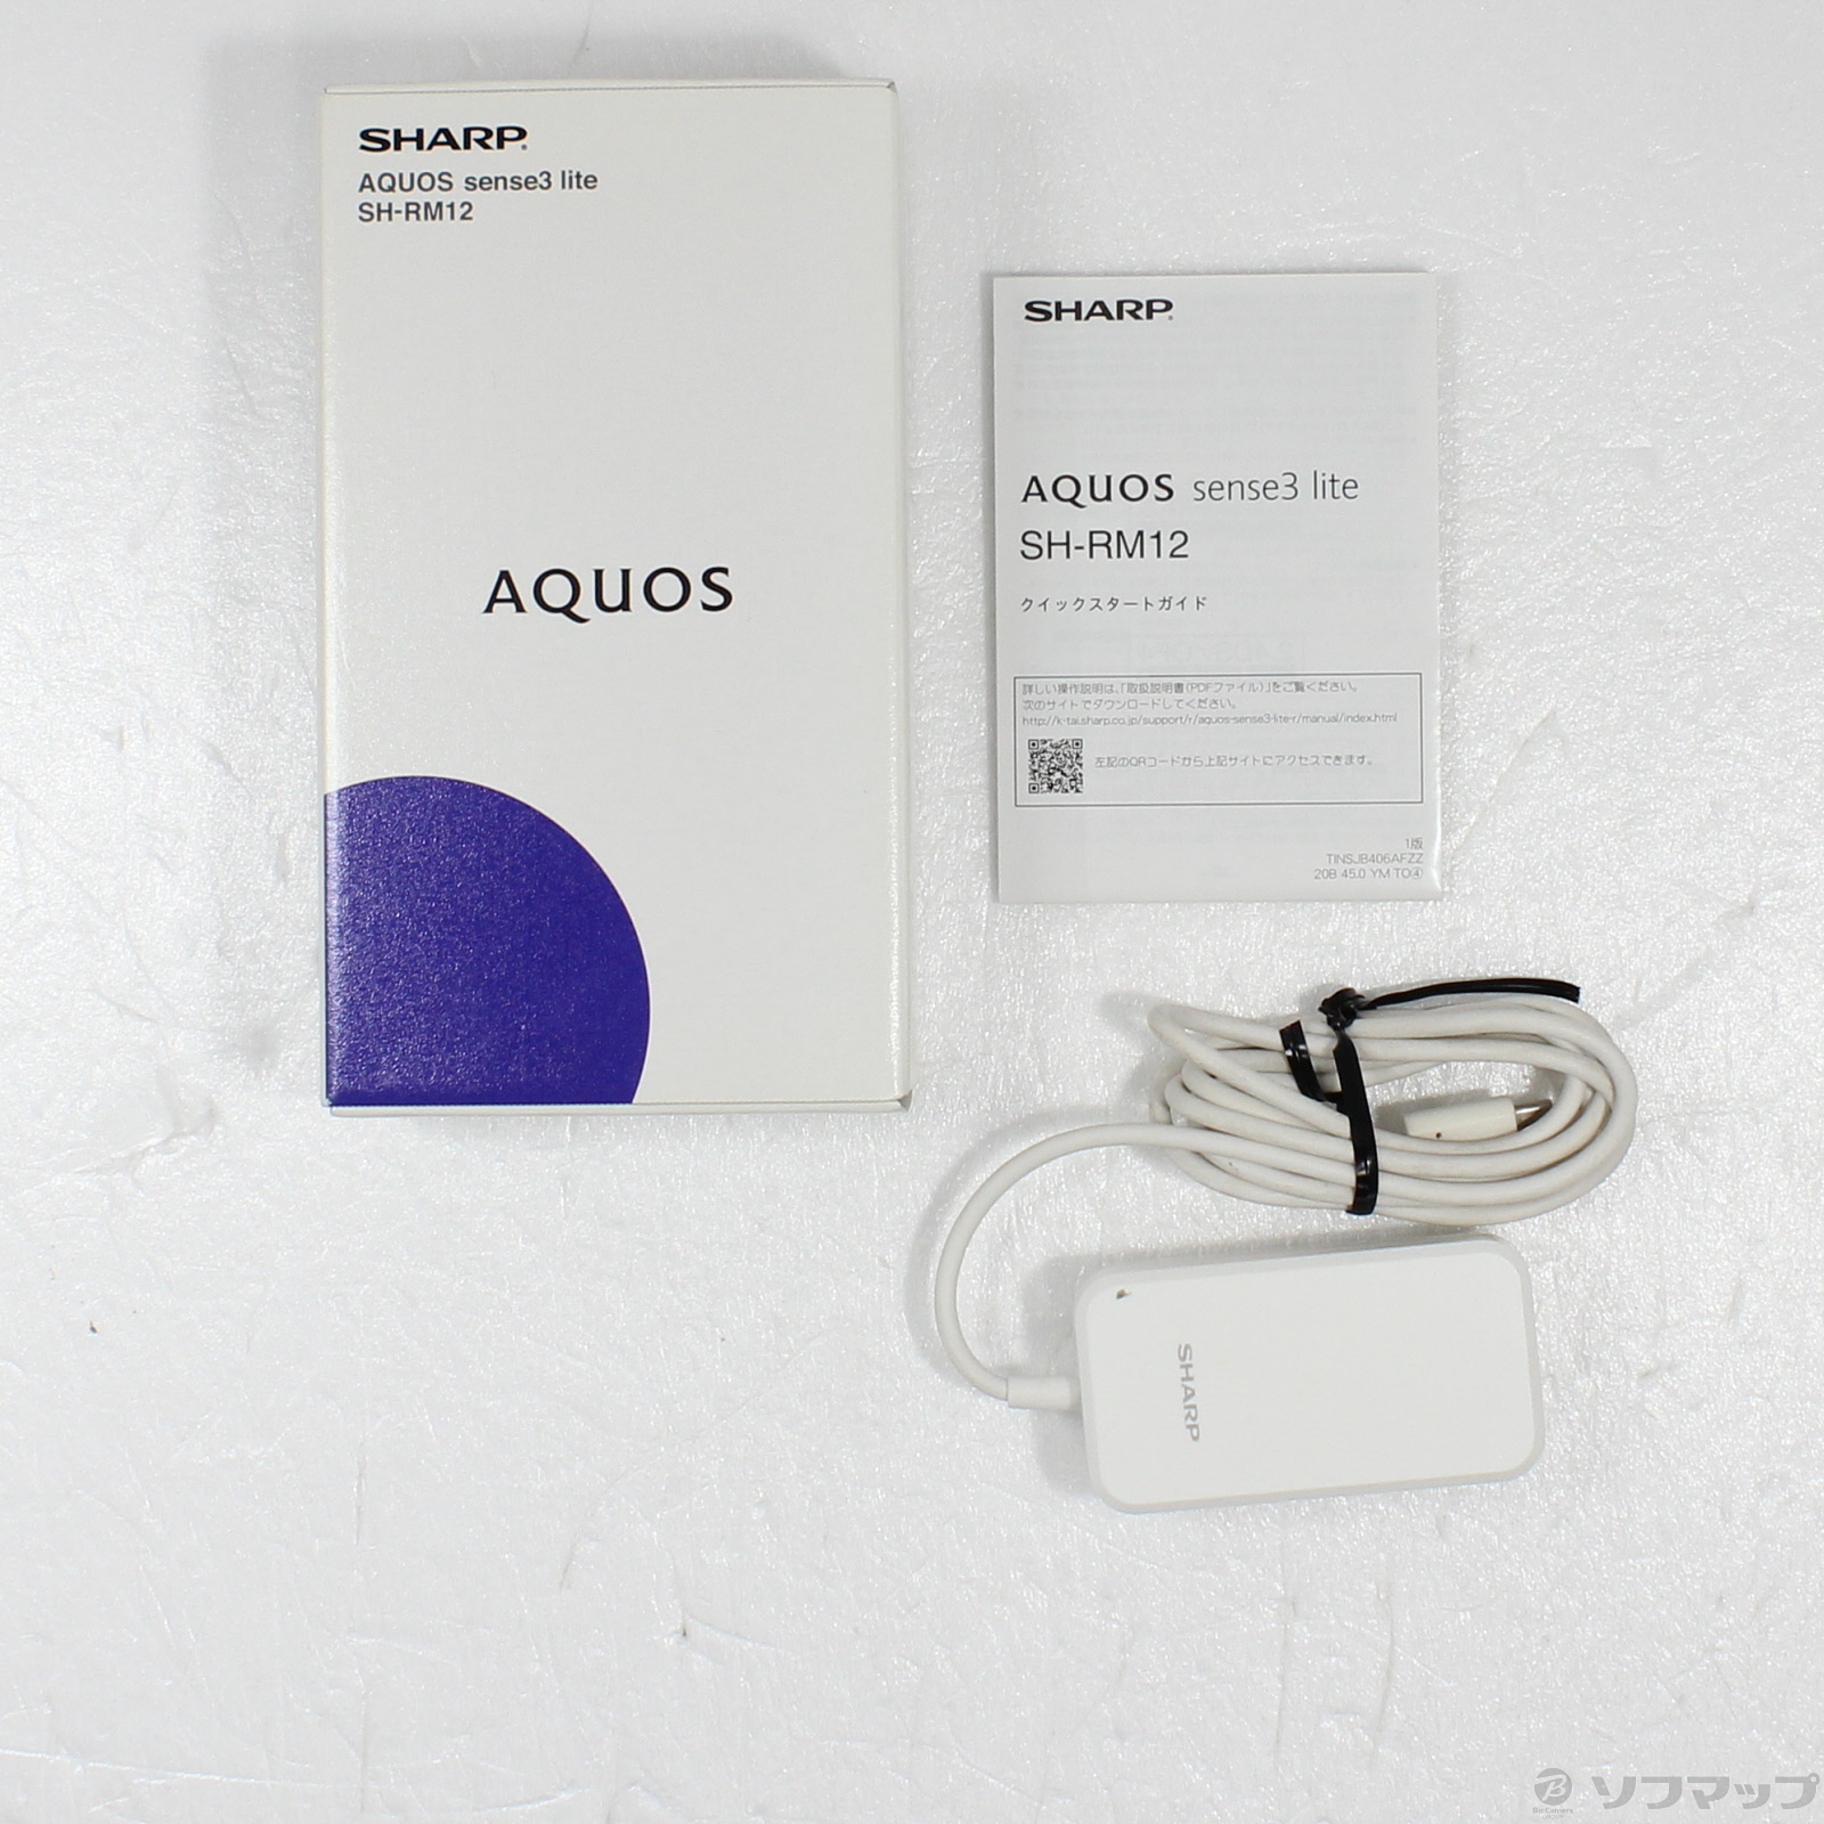 中古】AQUOS sense3 lite 楽天版 64GB ライトカッパー SH-RM12 SIM